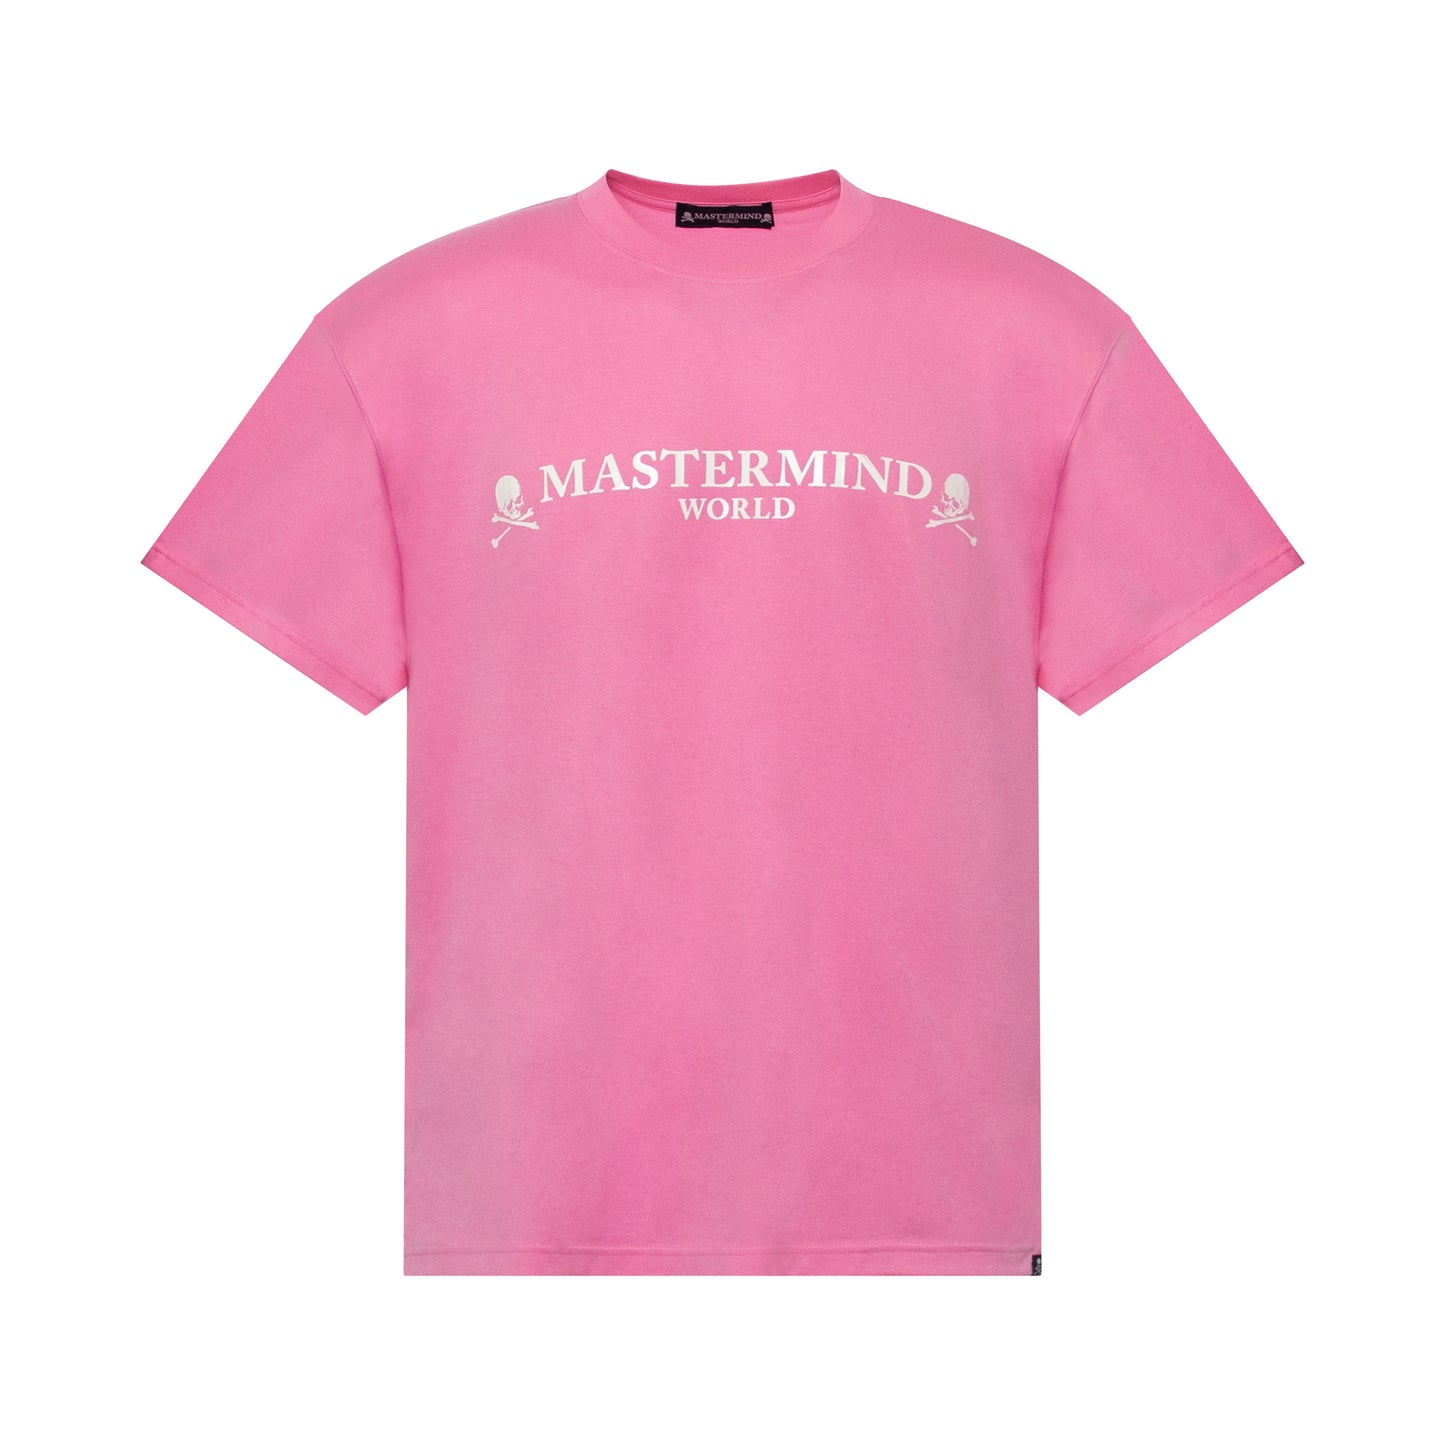 Mastermind World T-Shirt in Pink